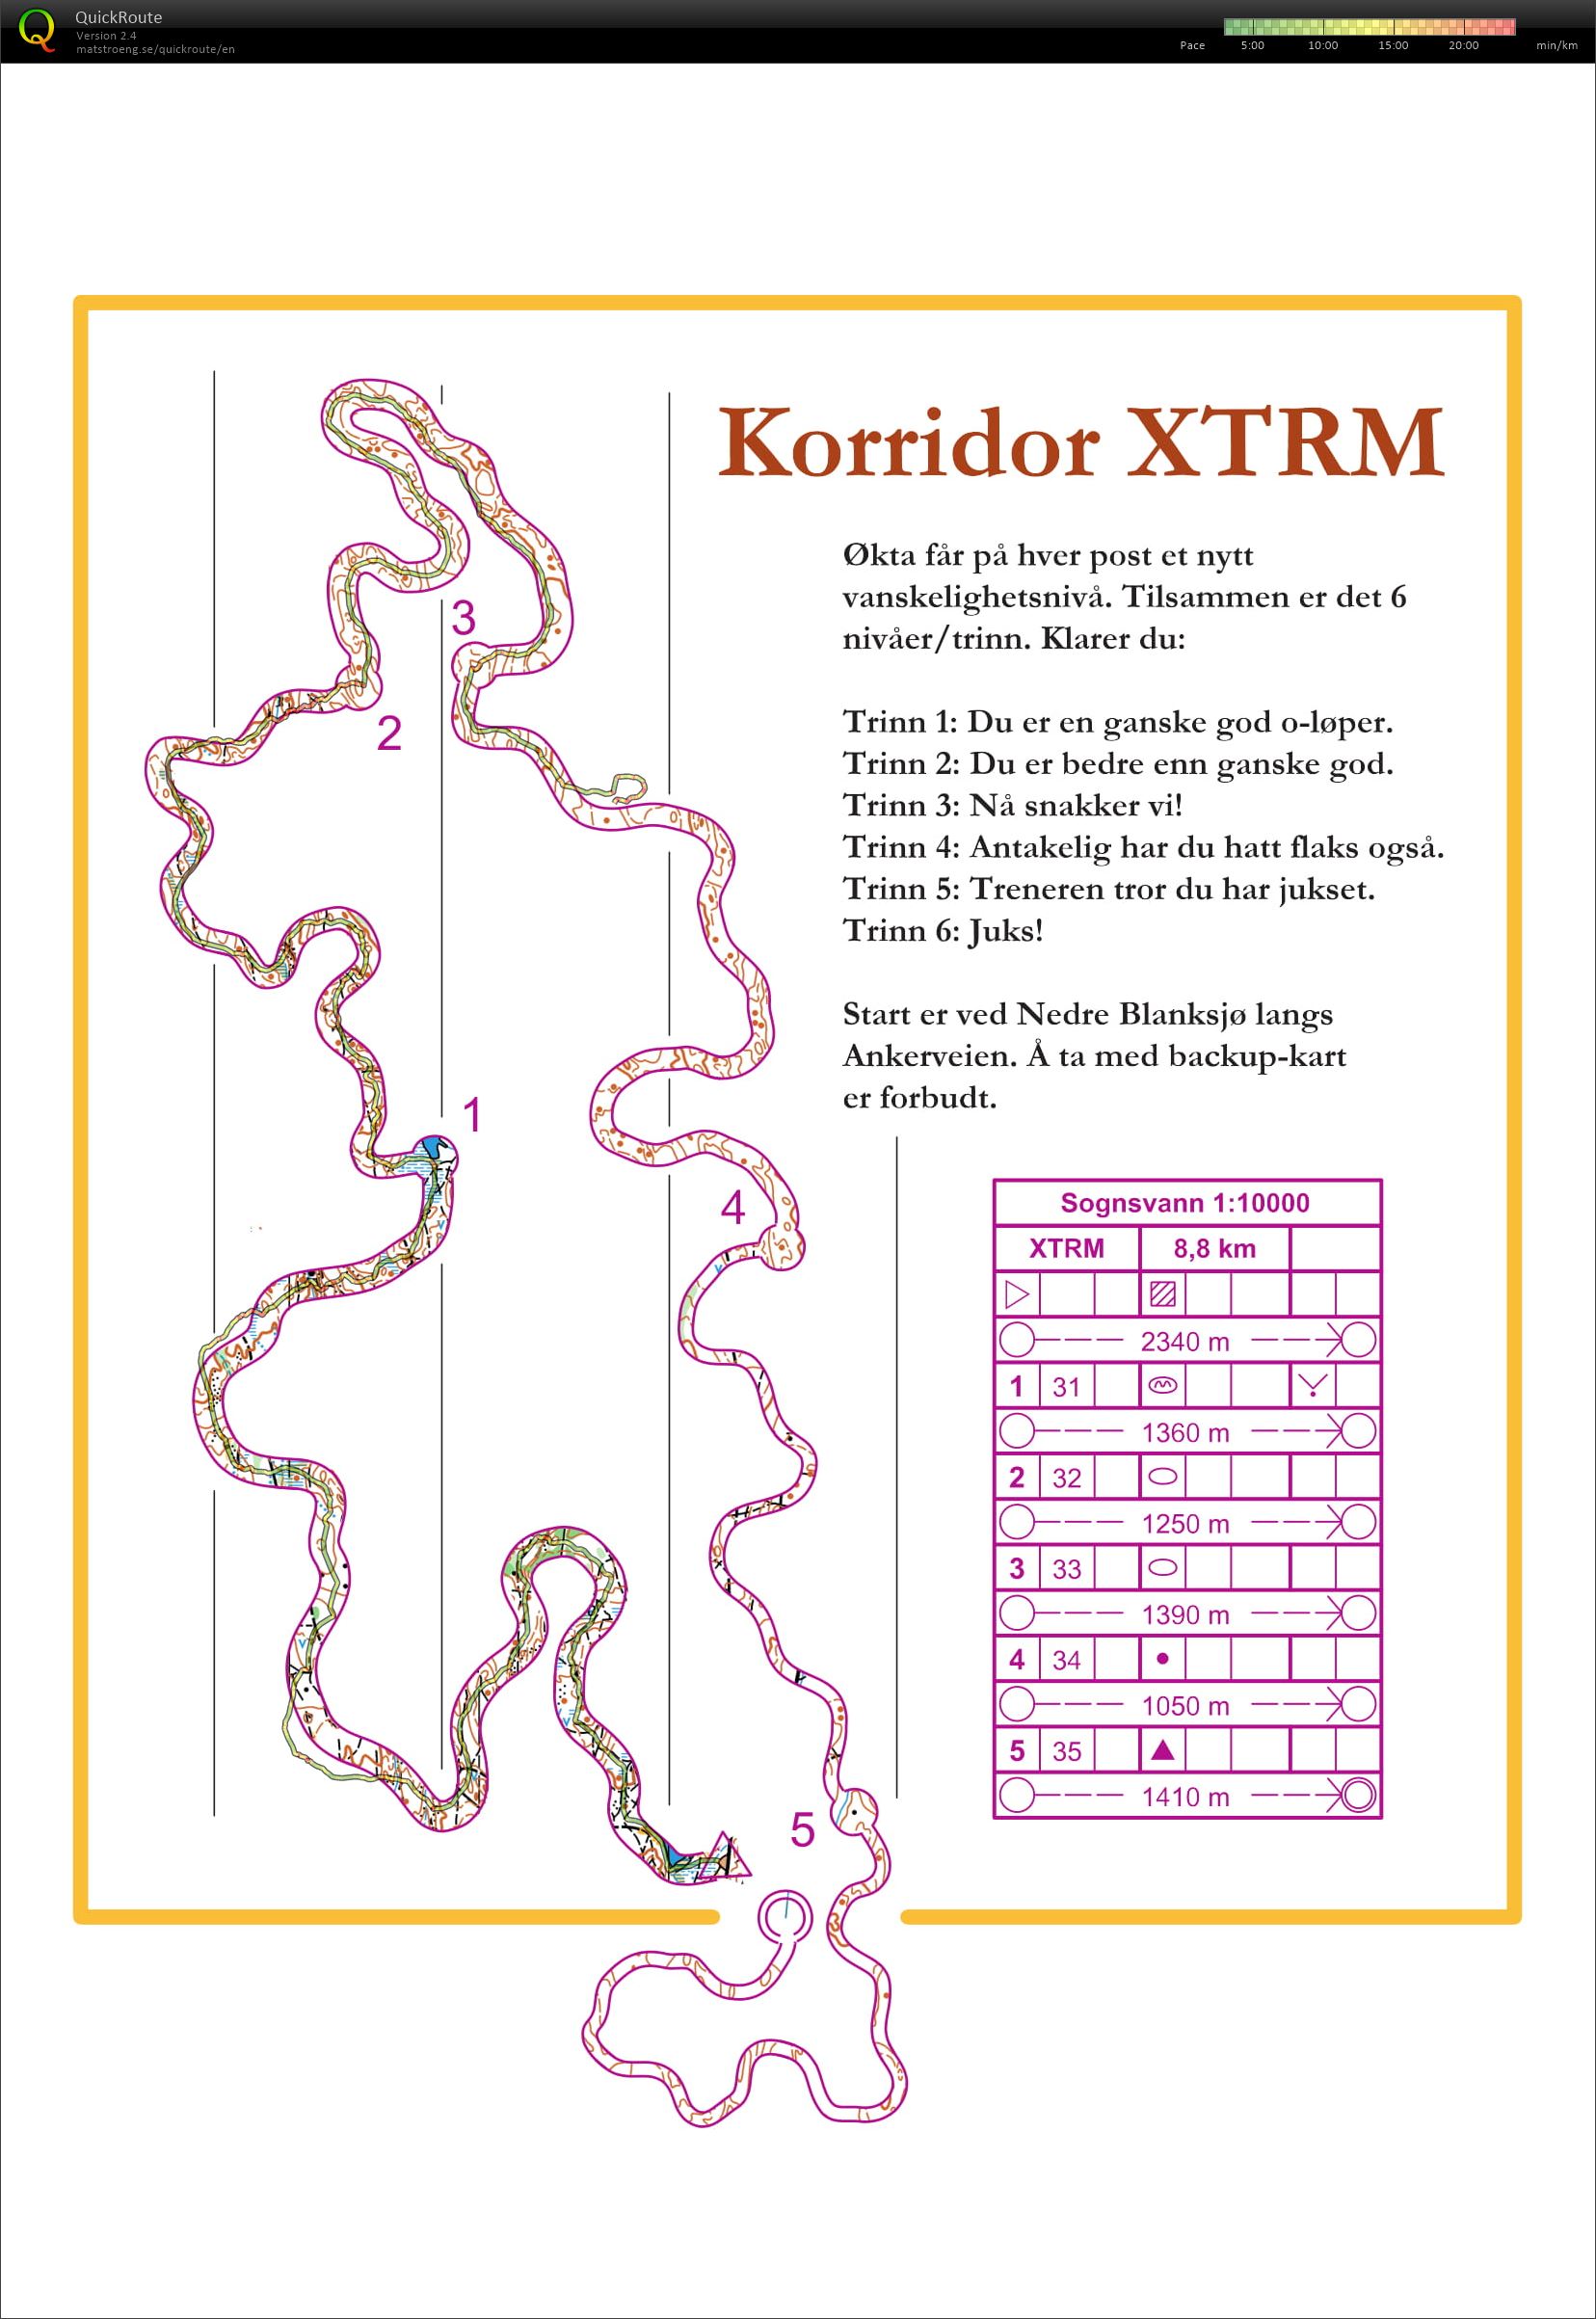 XTRM coridor (2018-06-07)